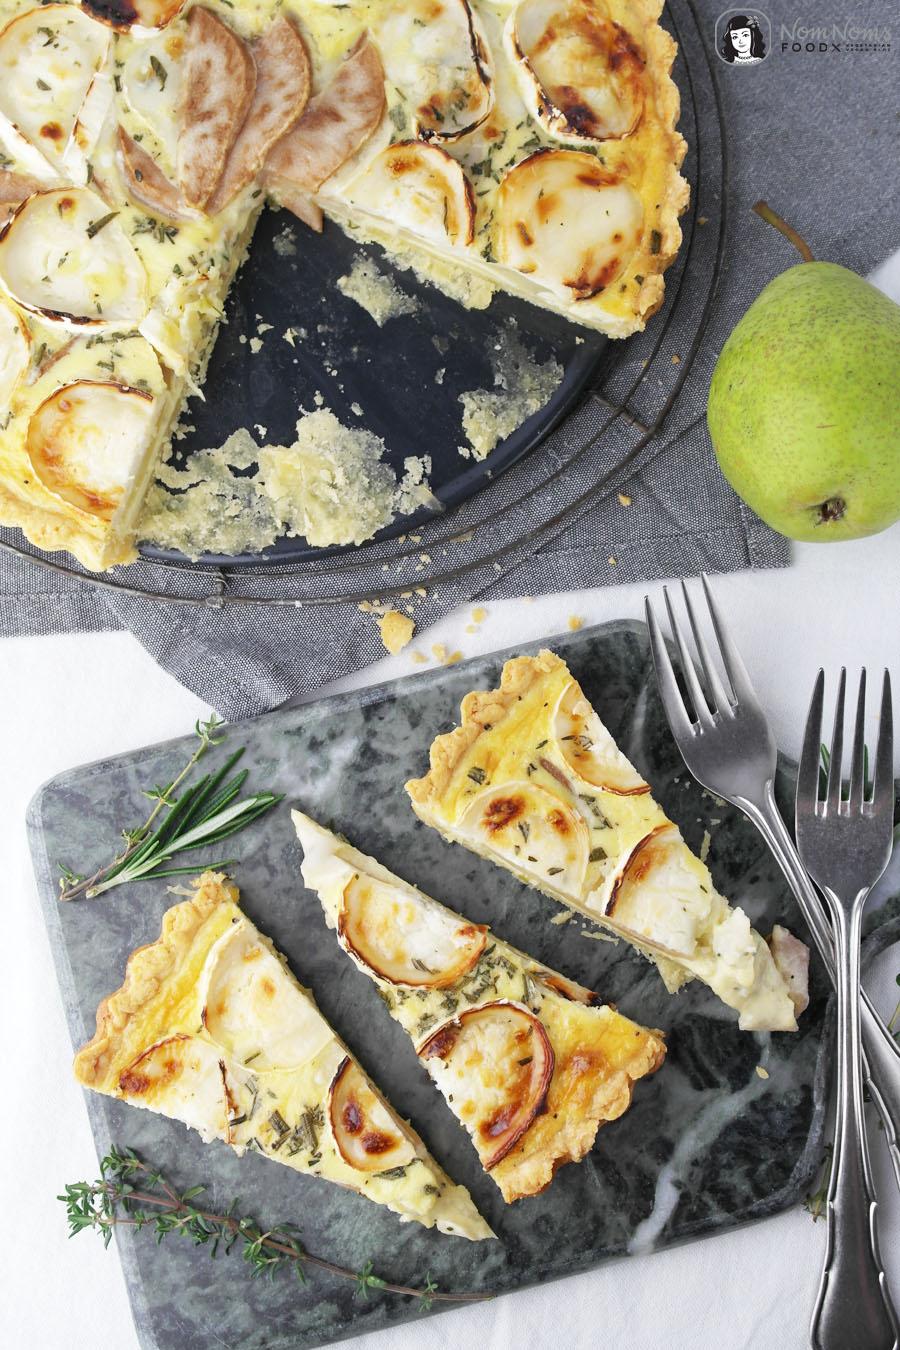 Birnen-Ziegenkäse-Quiche mit Parmesan-Boden 
#quiche #tarte #ziegenkäse #food #foodie #birne